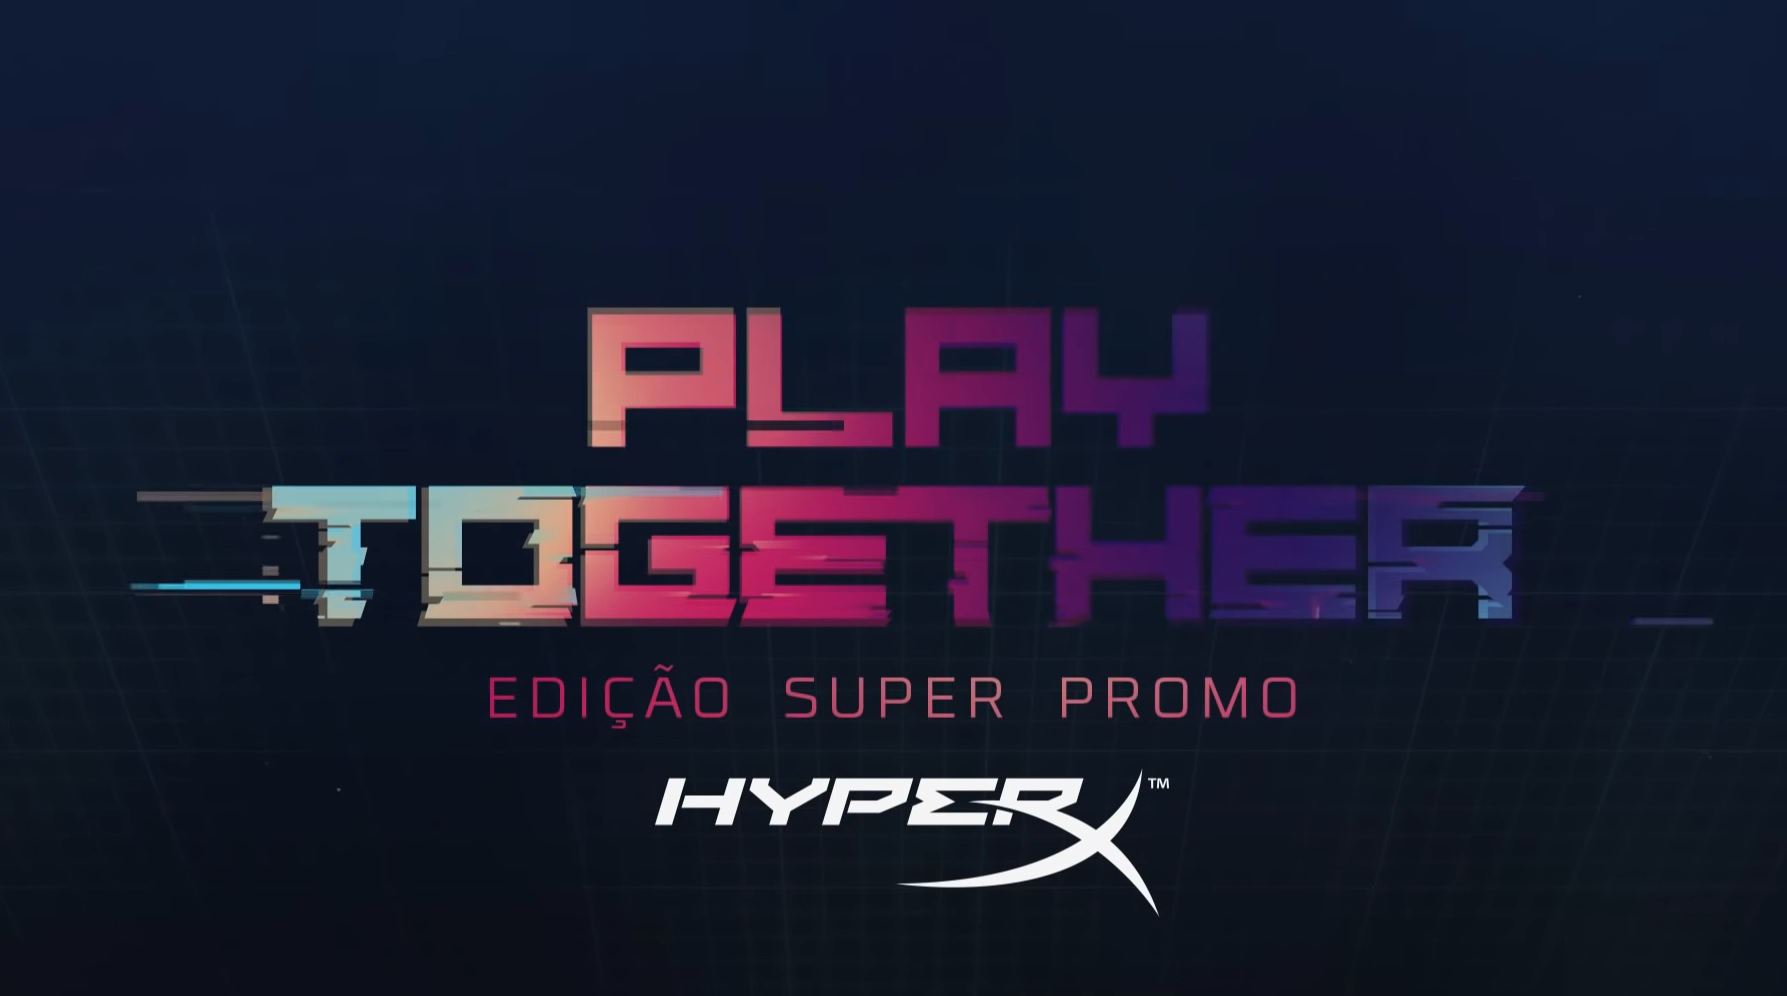 Superpromo HyperX começa neste (11) sábado com a terceira edição da live HyperX Play Together